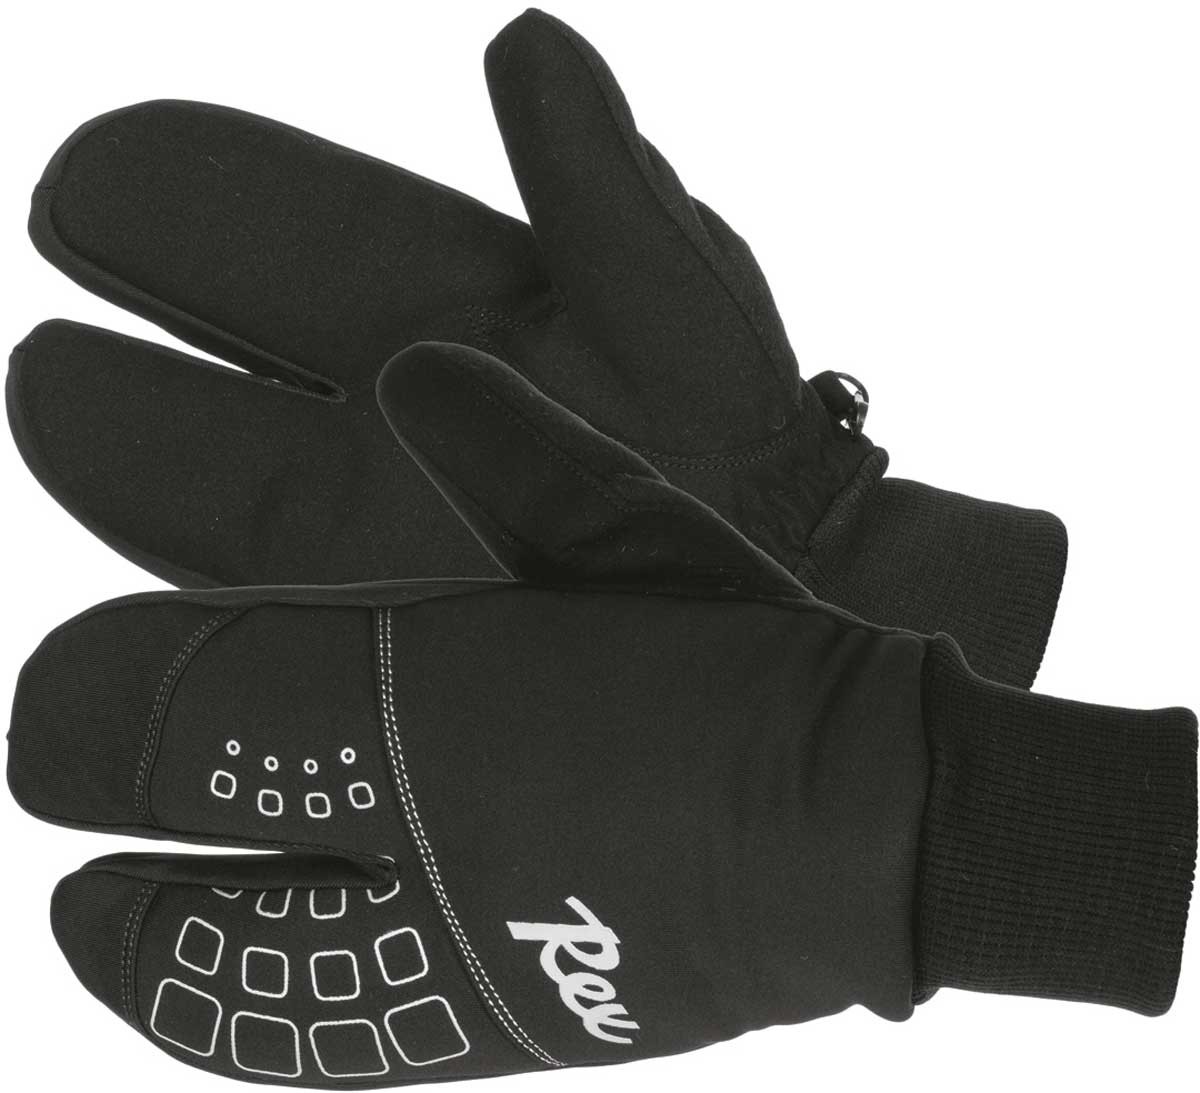 Dětské běžecké rukavice Rex LOBSTER windlock Junior 2021/22